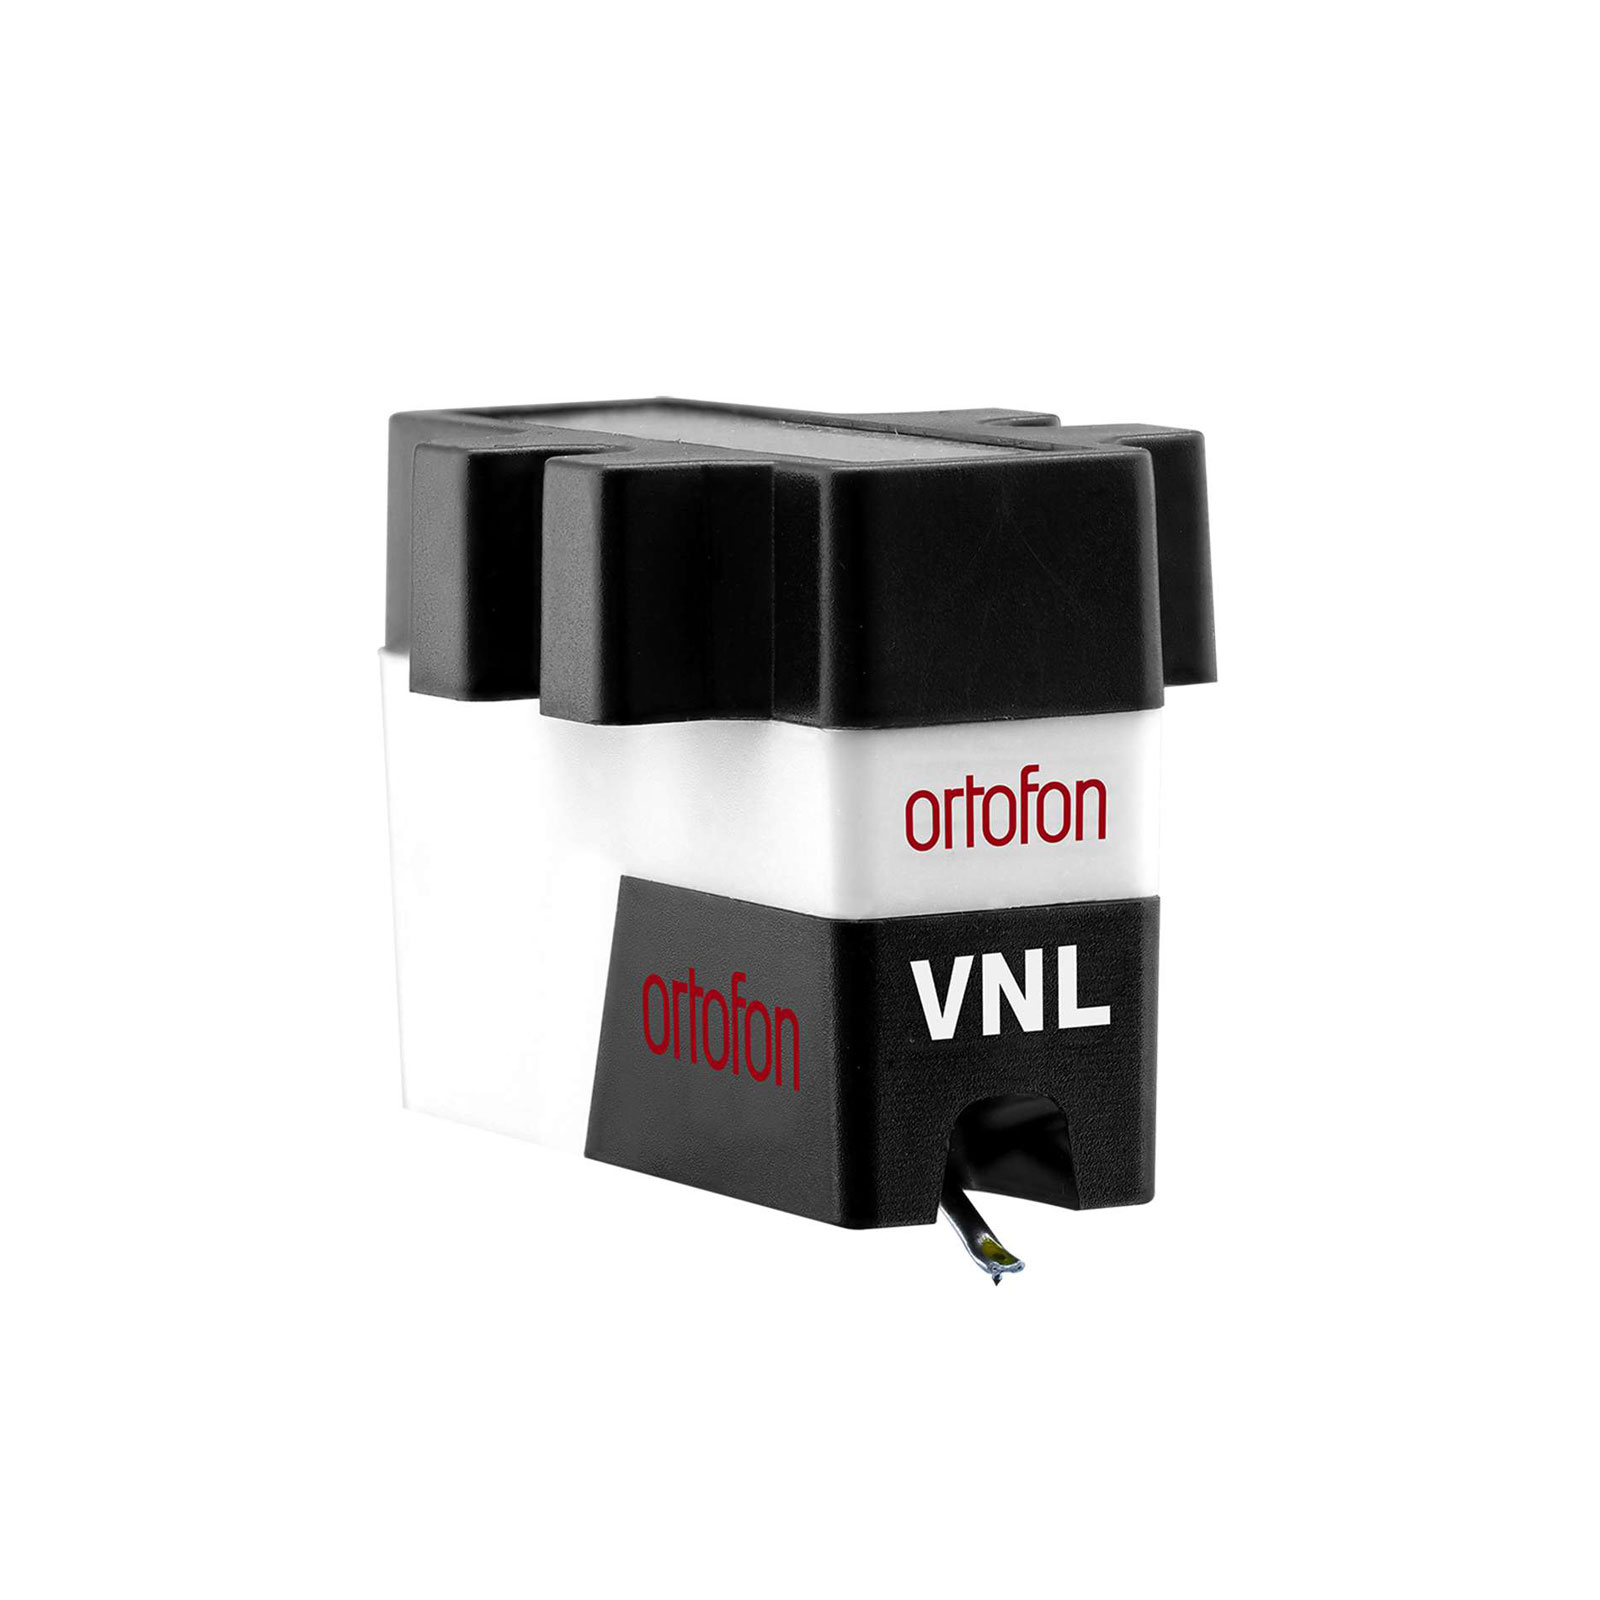 ORTOFON VNL - 3 DIAMANTS